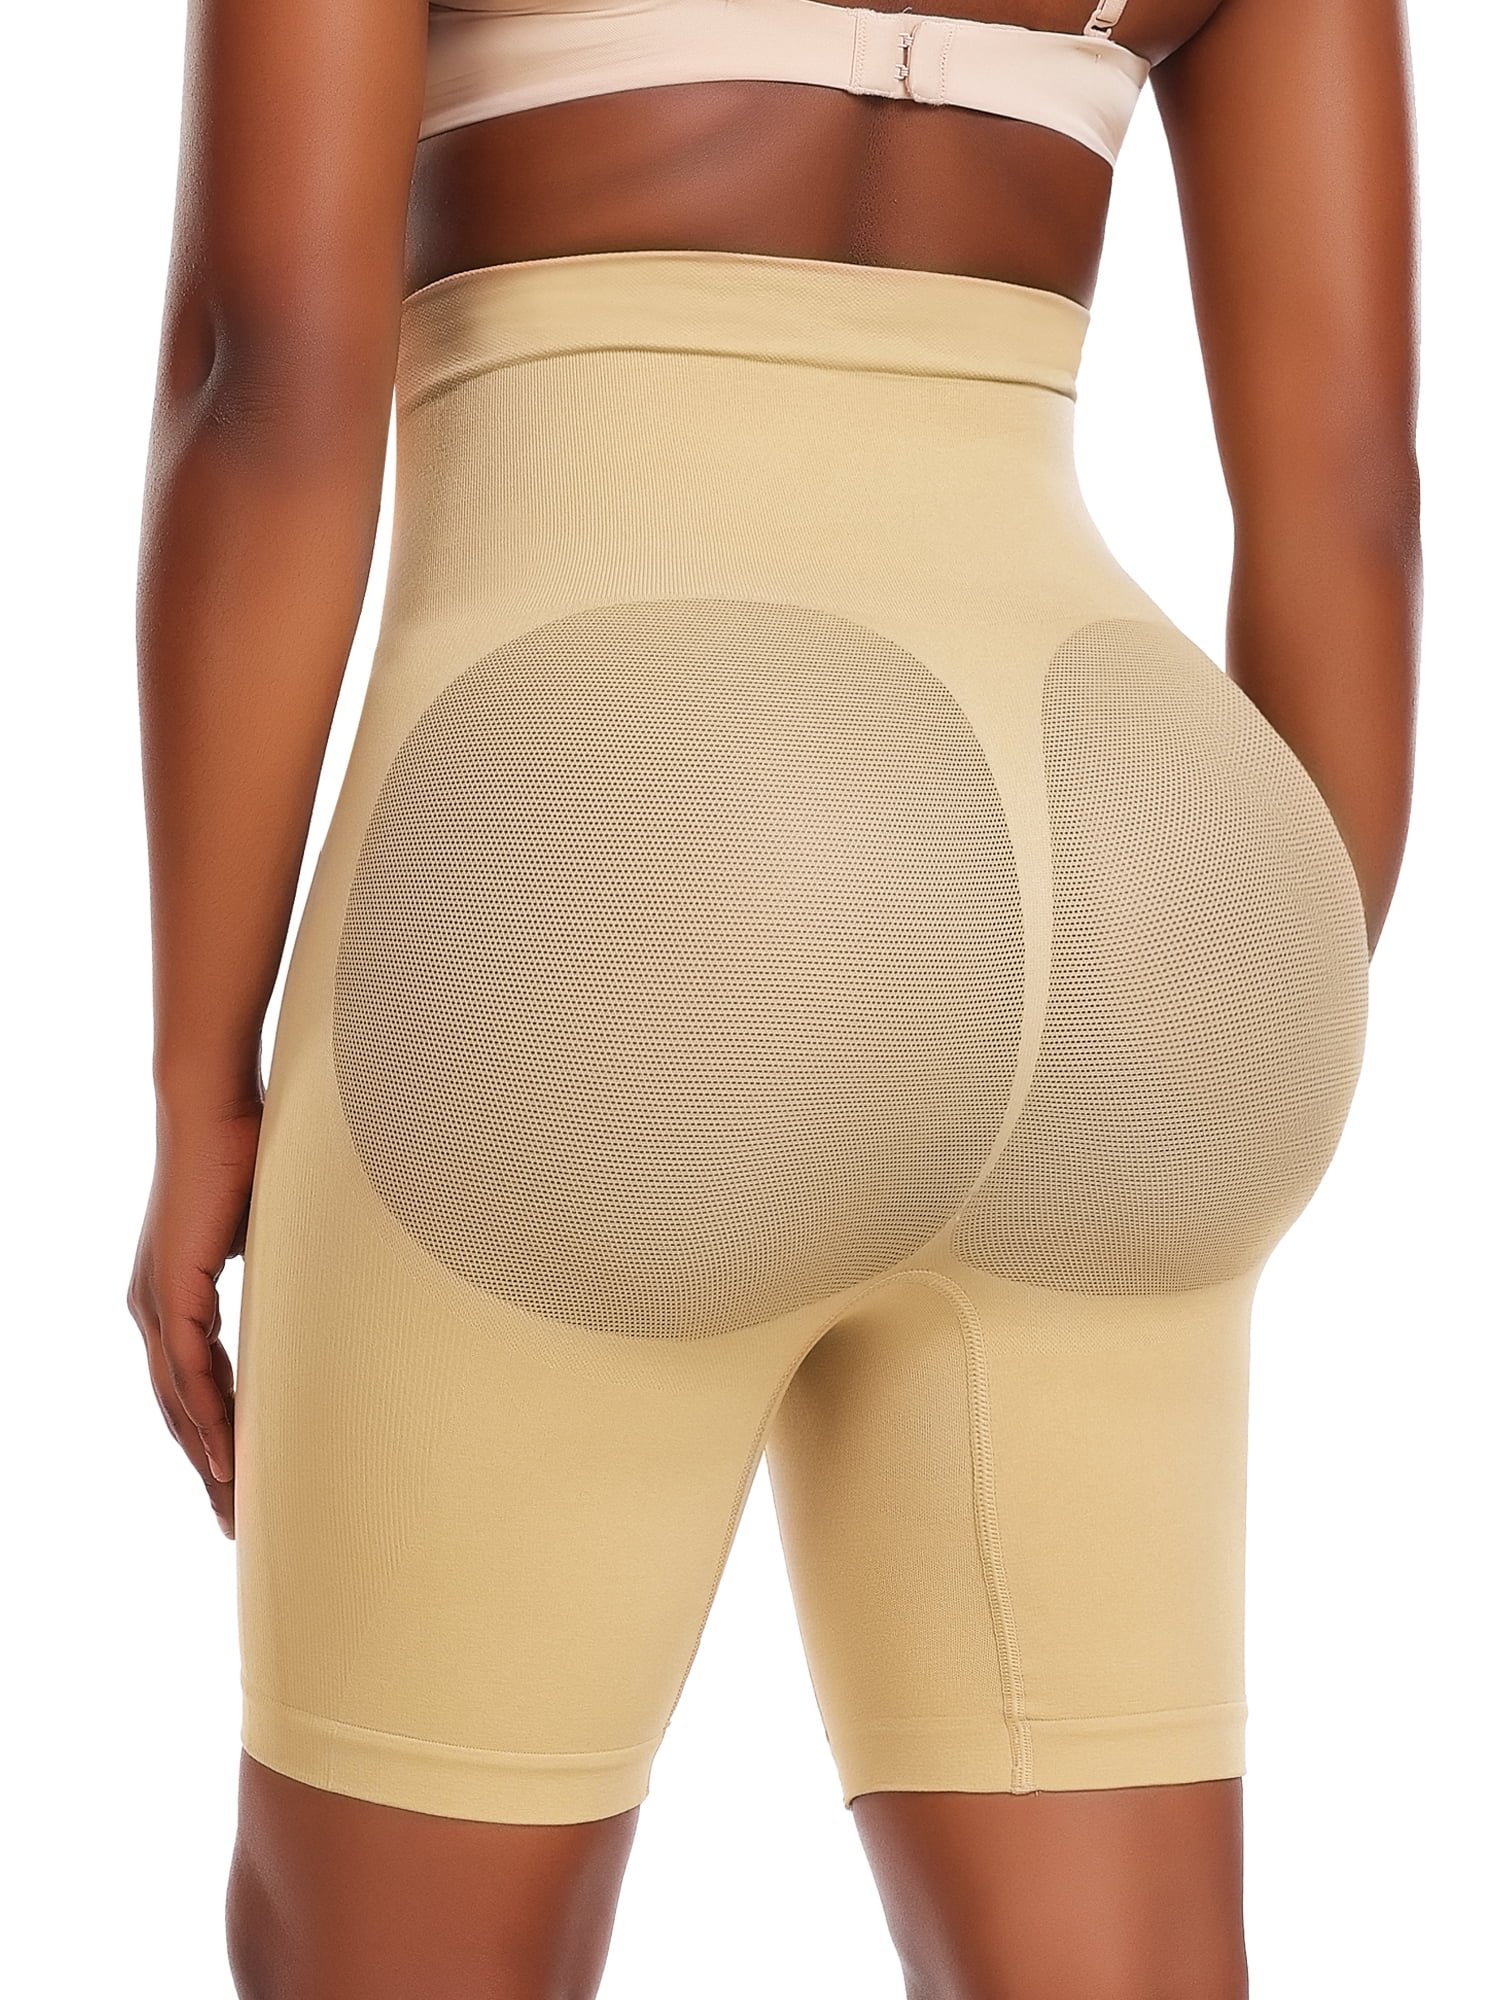 Joyshaper Butt Lifter Bodysuit for Women Seamless Full Body Shaper